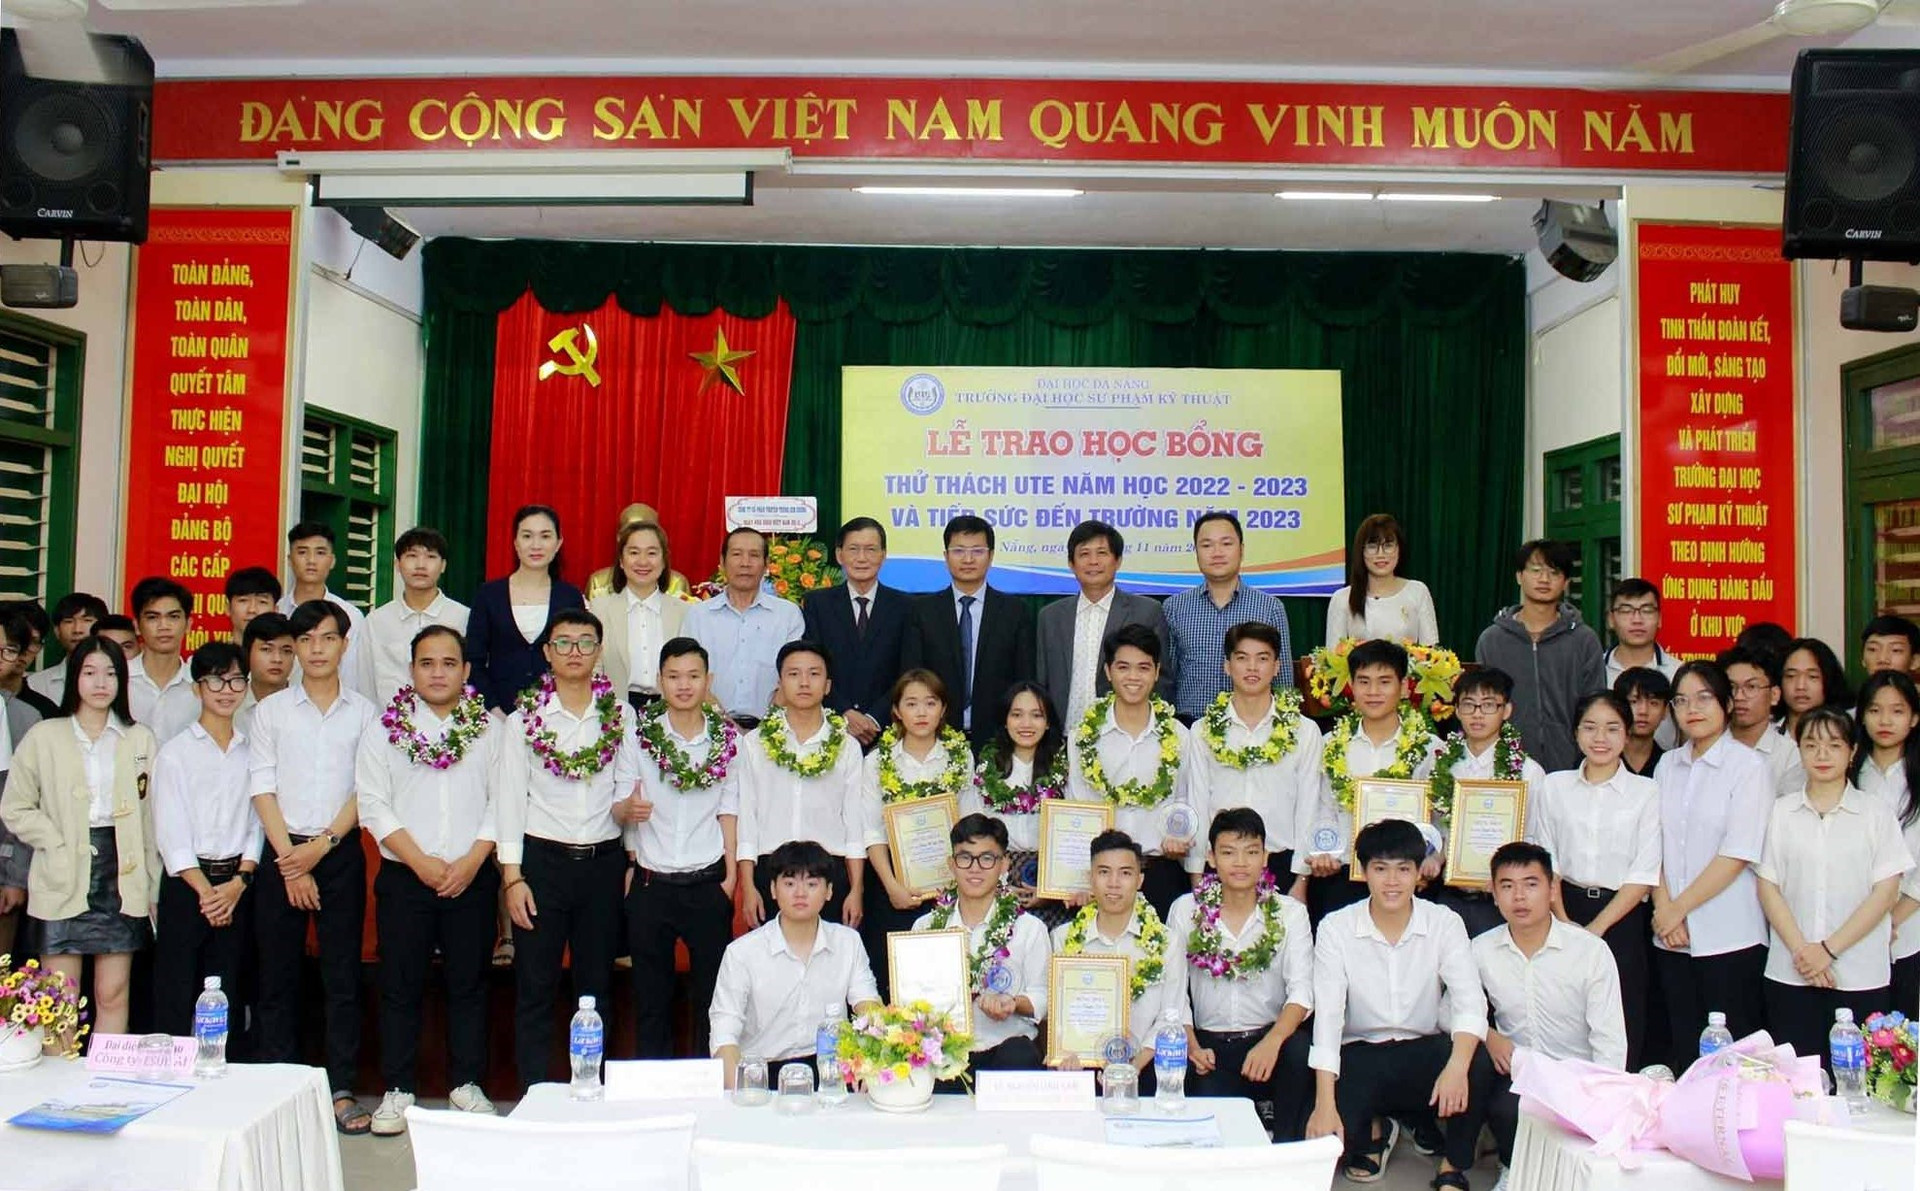 70 SV Trường ĐH Sư phạm Kỹ thuật- ĐHĐN nhận học bổng trị giá 374 triệu đồng. Ảnh Nguyễn Đắc